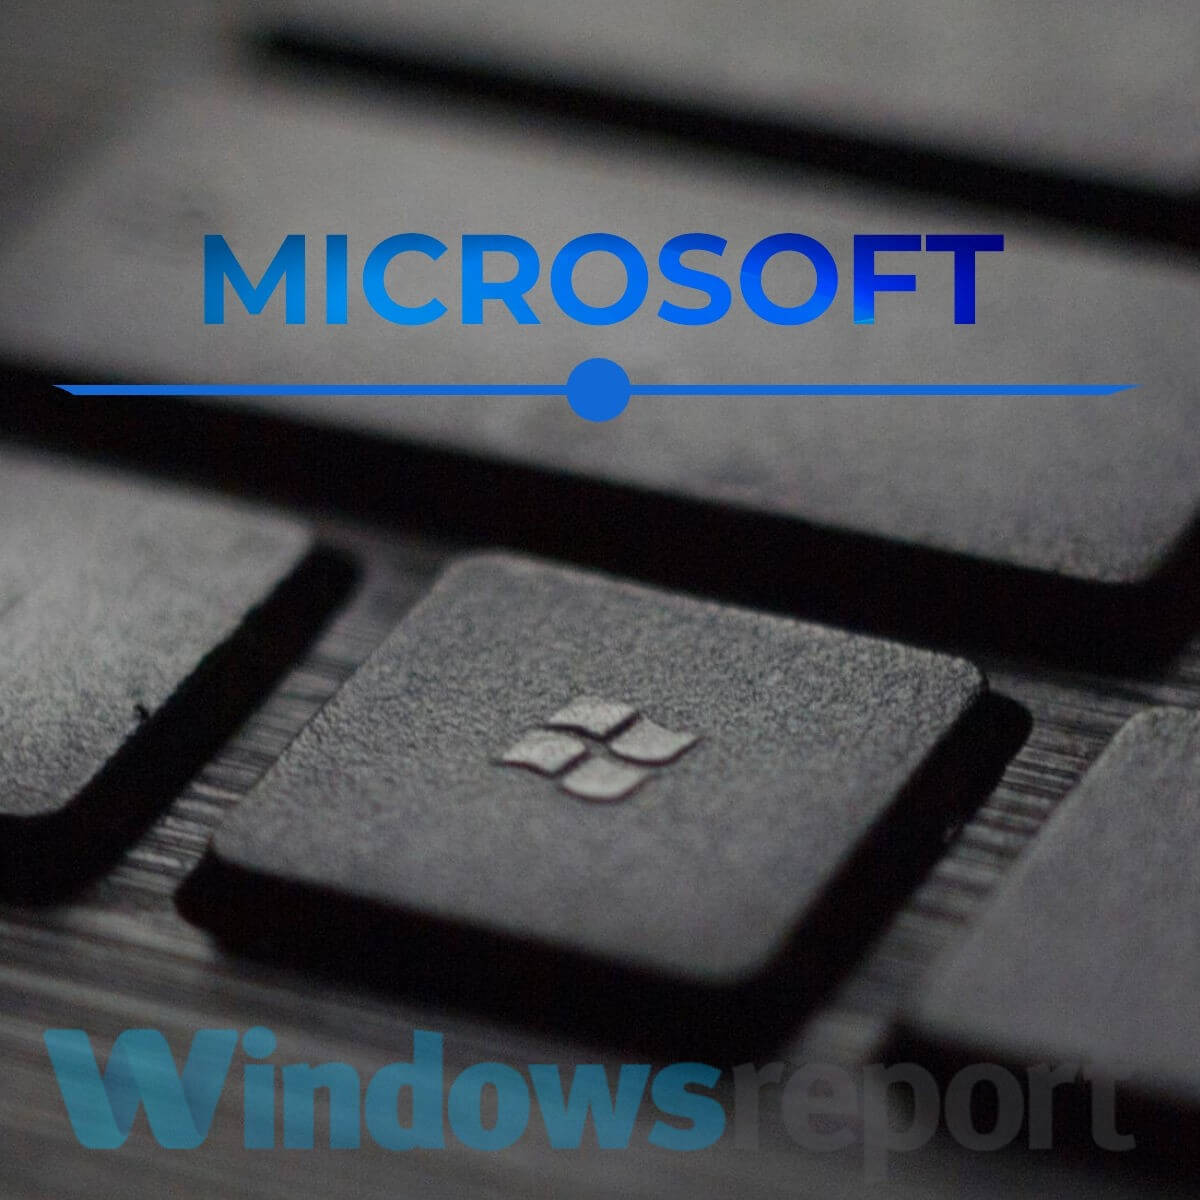 ventanas de teclado - Windows 10 alguien todavía está usando esta PC